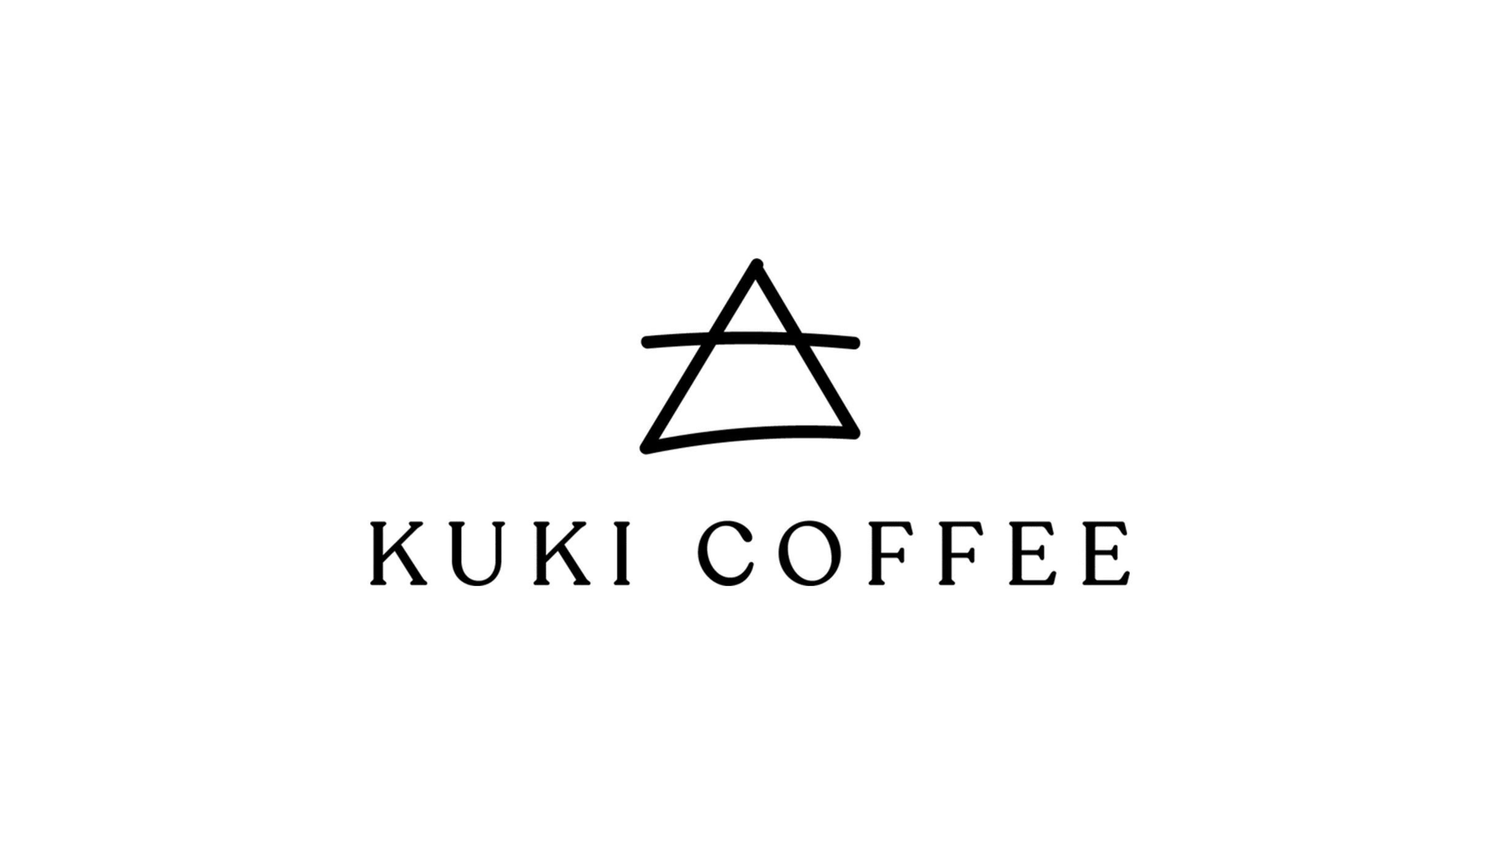 Kuki Coffee